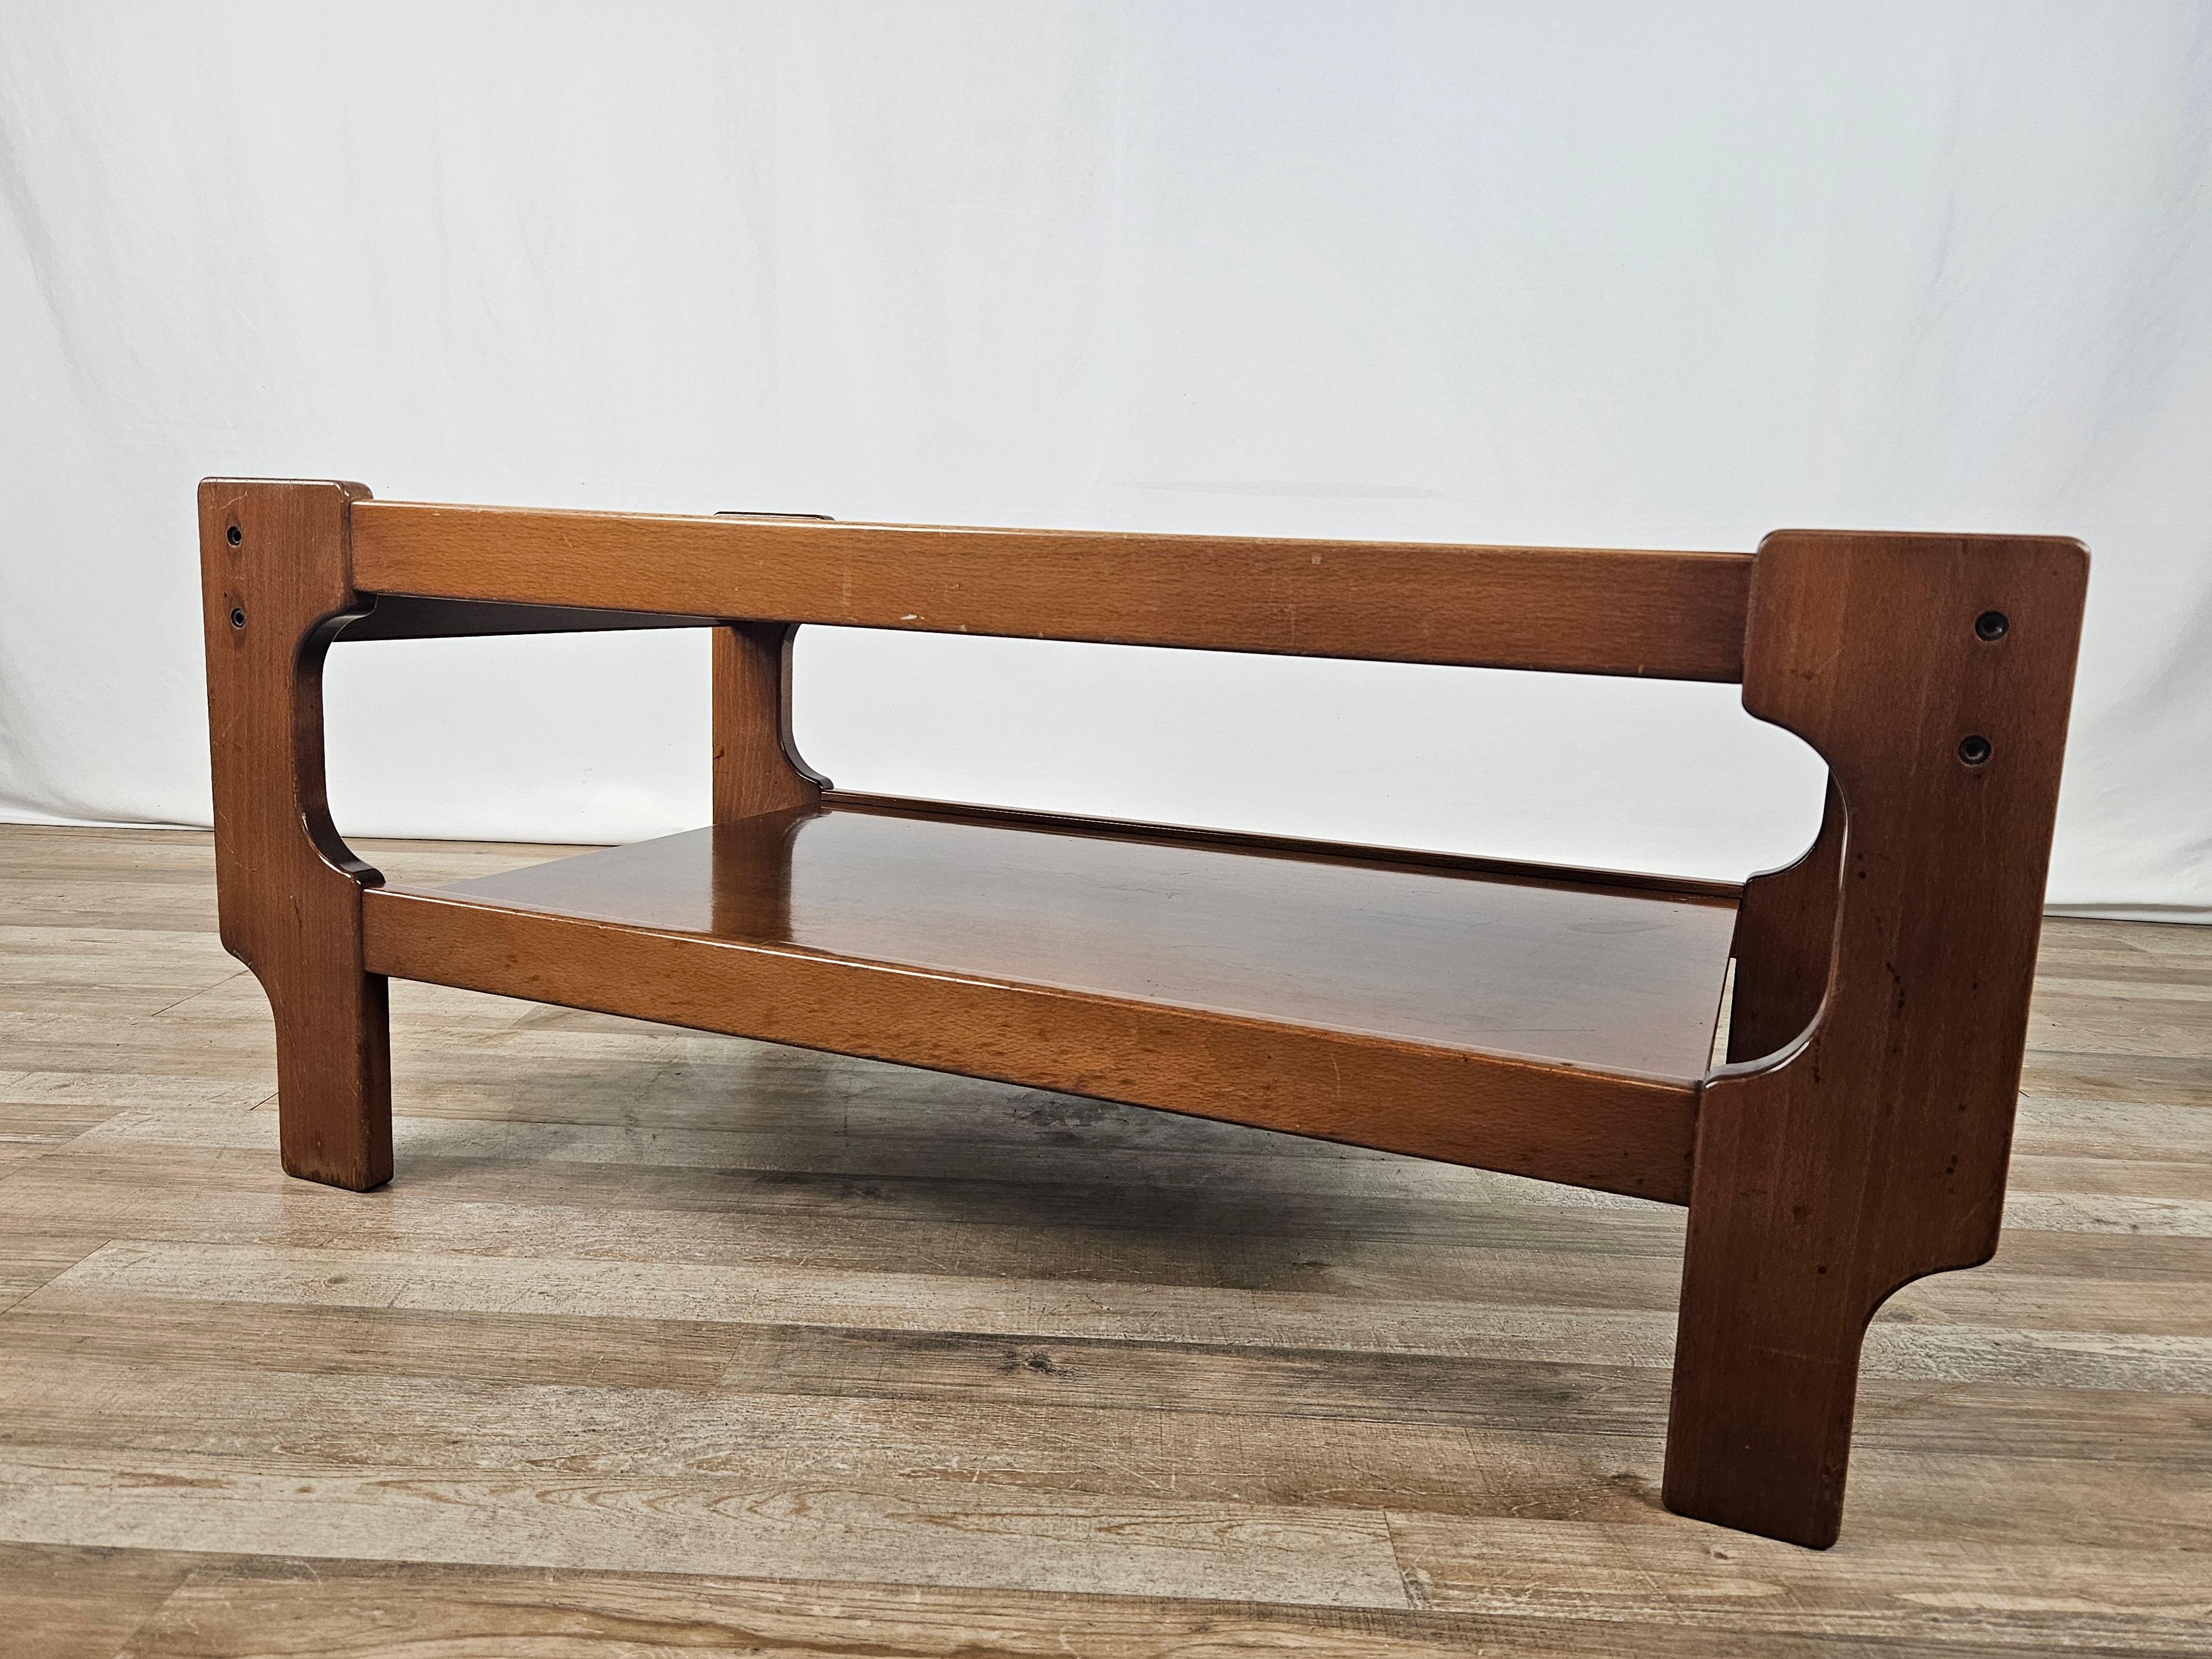 Table basse en teck avec deux étagères, une principale en verre fumé et une en bois.

Un excellent meuble de design et de modernisme italien des années 1970.